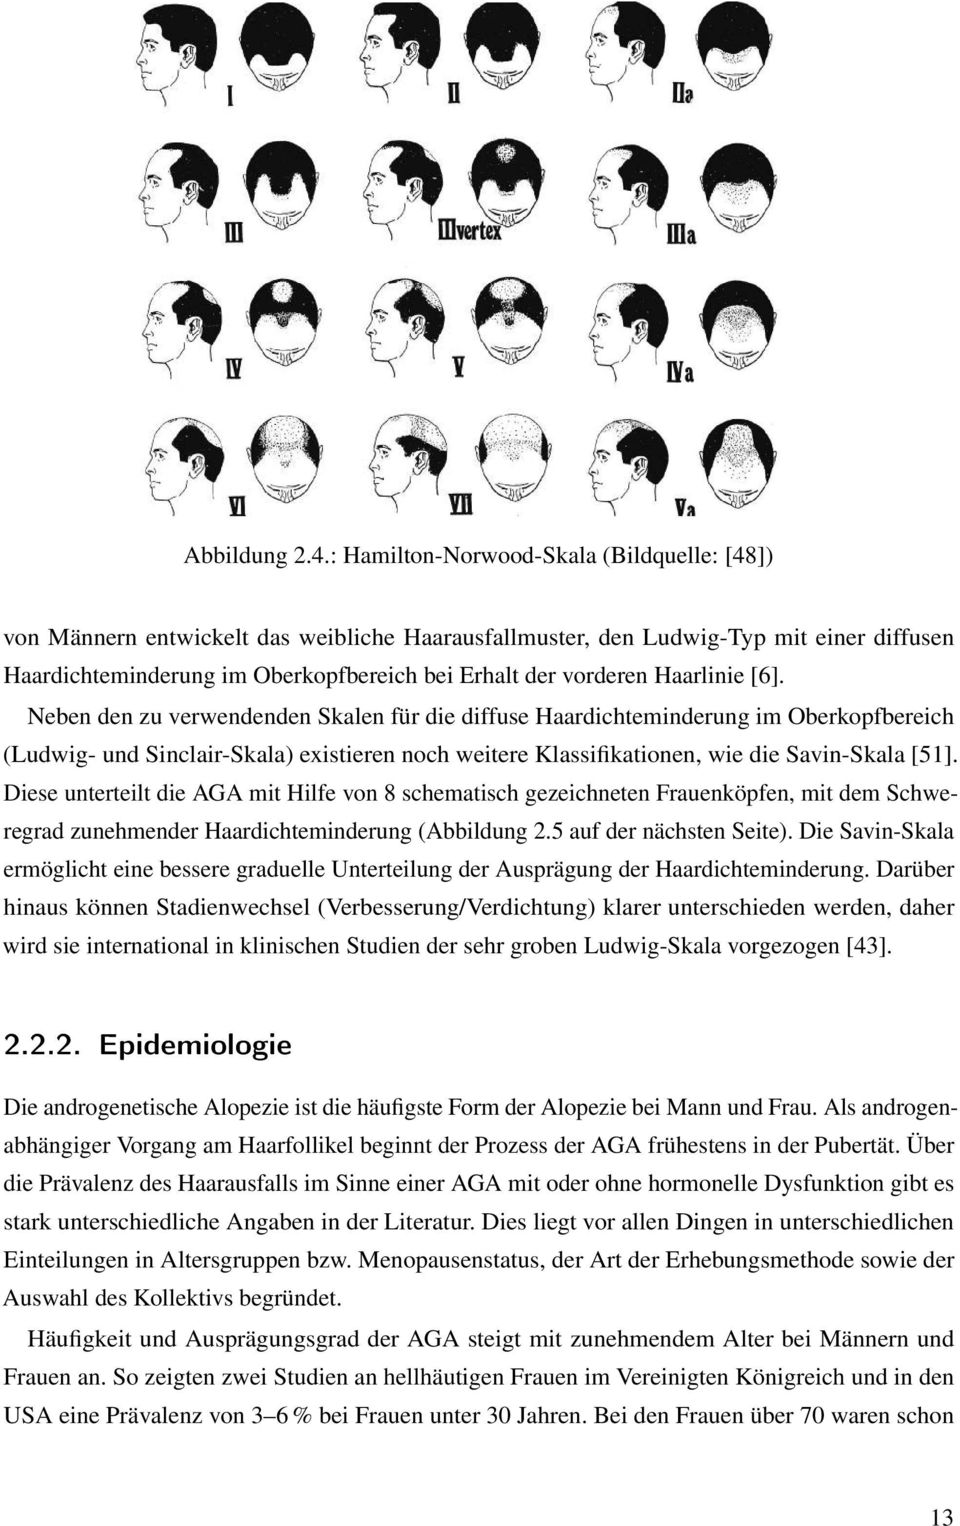 Haarlinie [6]. Neben den zu verwendenden Skalen für die diffuse Haardichteminderung im Oberkopfbereich (Ludwig- und Sinclair-Skala) existieren noch weitere Klassifikationen, wie die Savin-Skala [51].